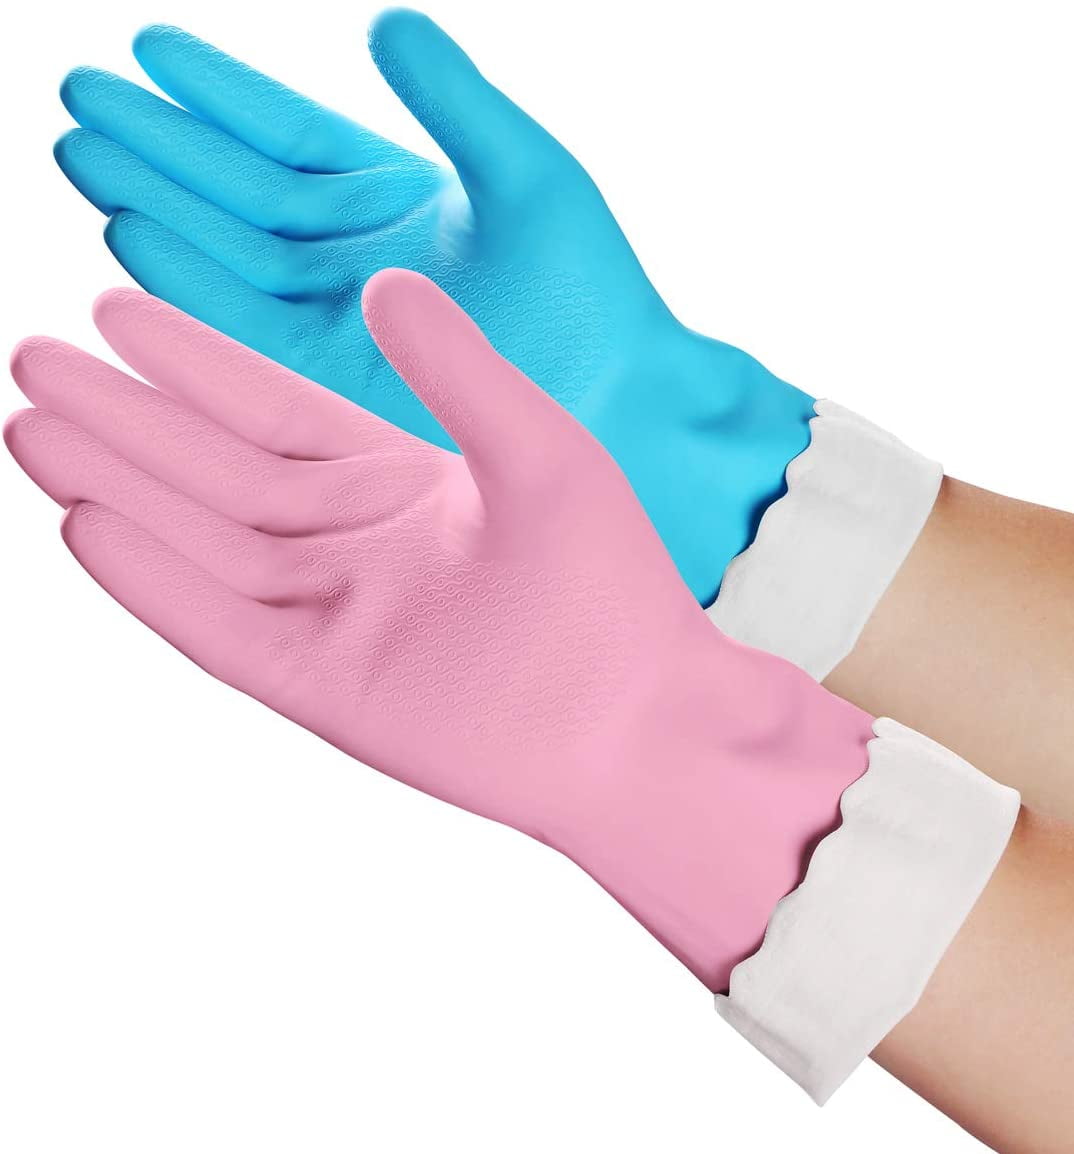 Soft Scrub 12811-16 Small Soft Scrub Premium Defense Purple Rubber Gloves 